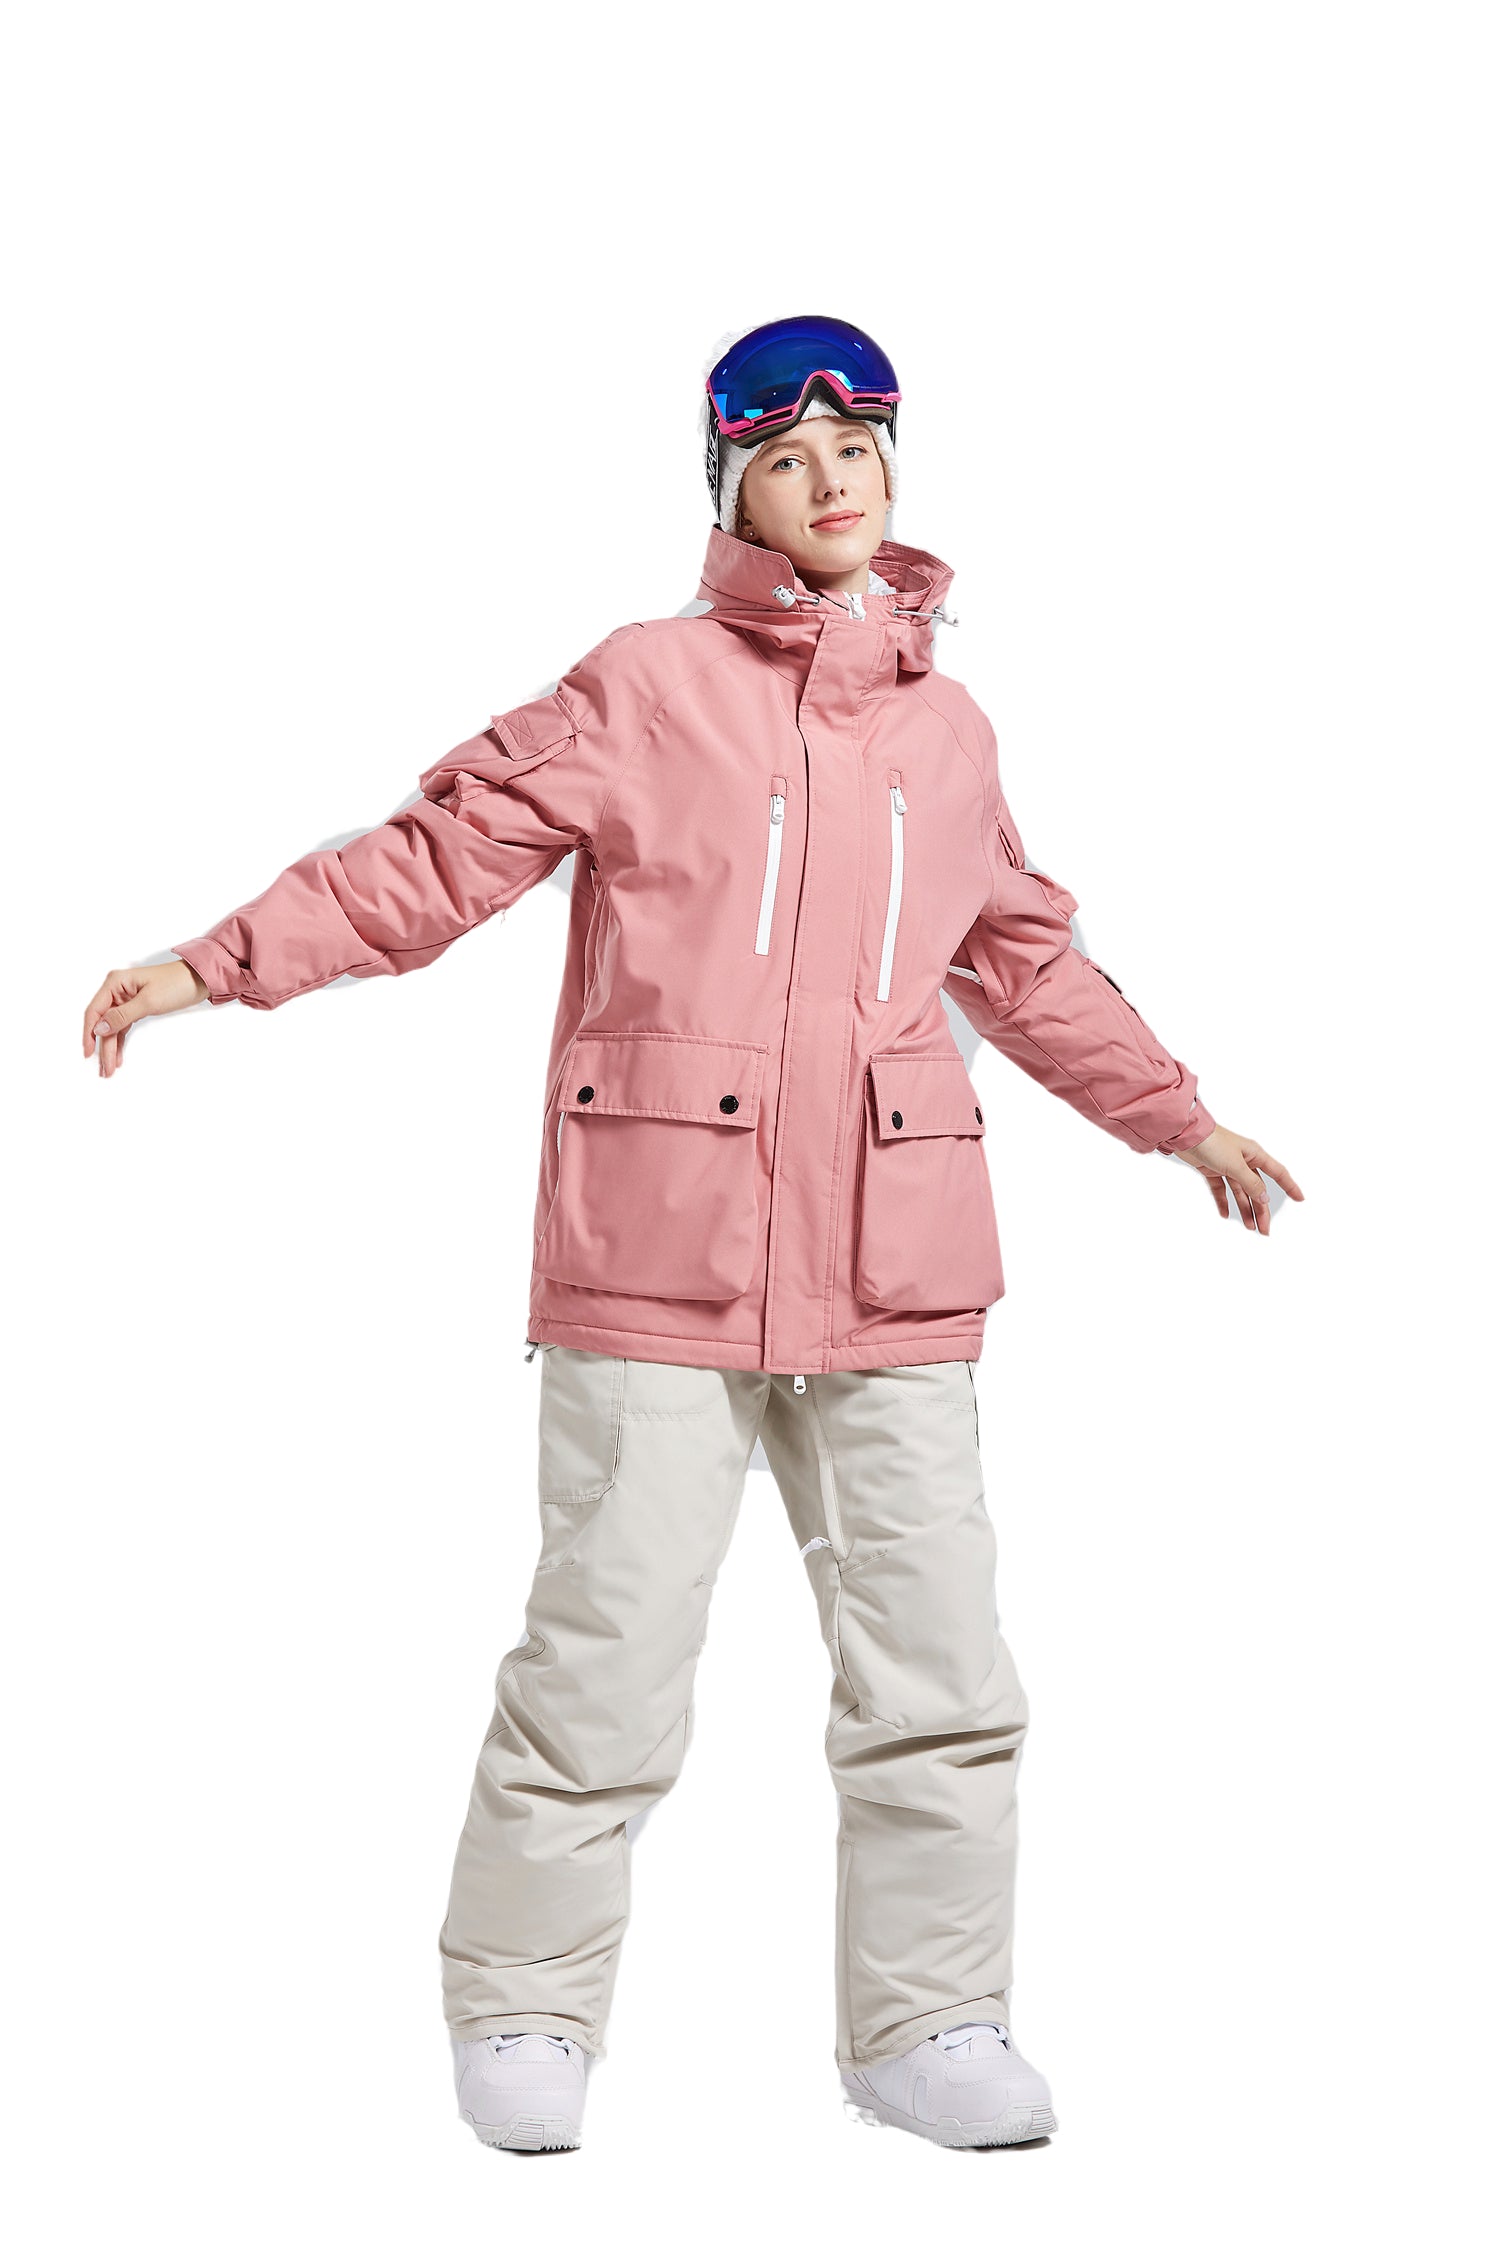 SNBOCON Womens Couple Slim-fit Snow Pants Snowboarding Pants